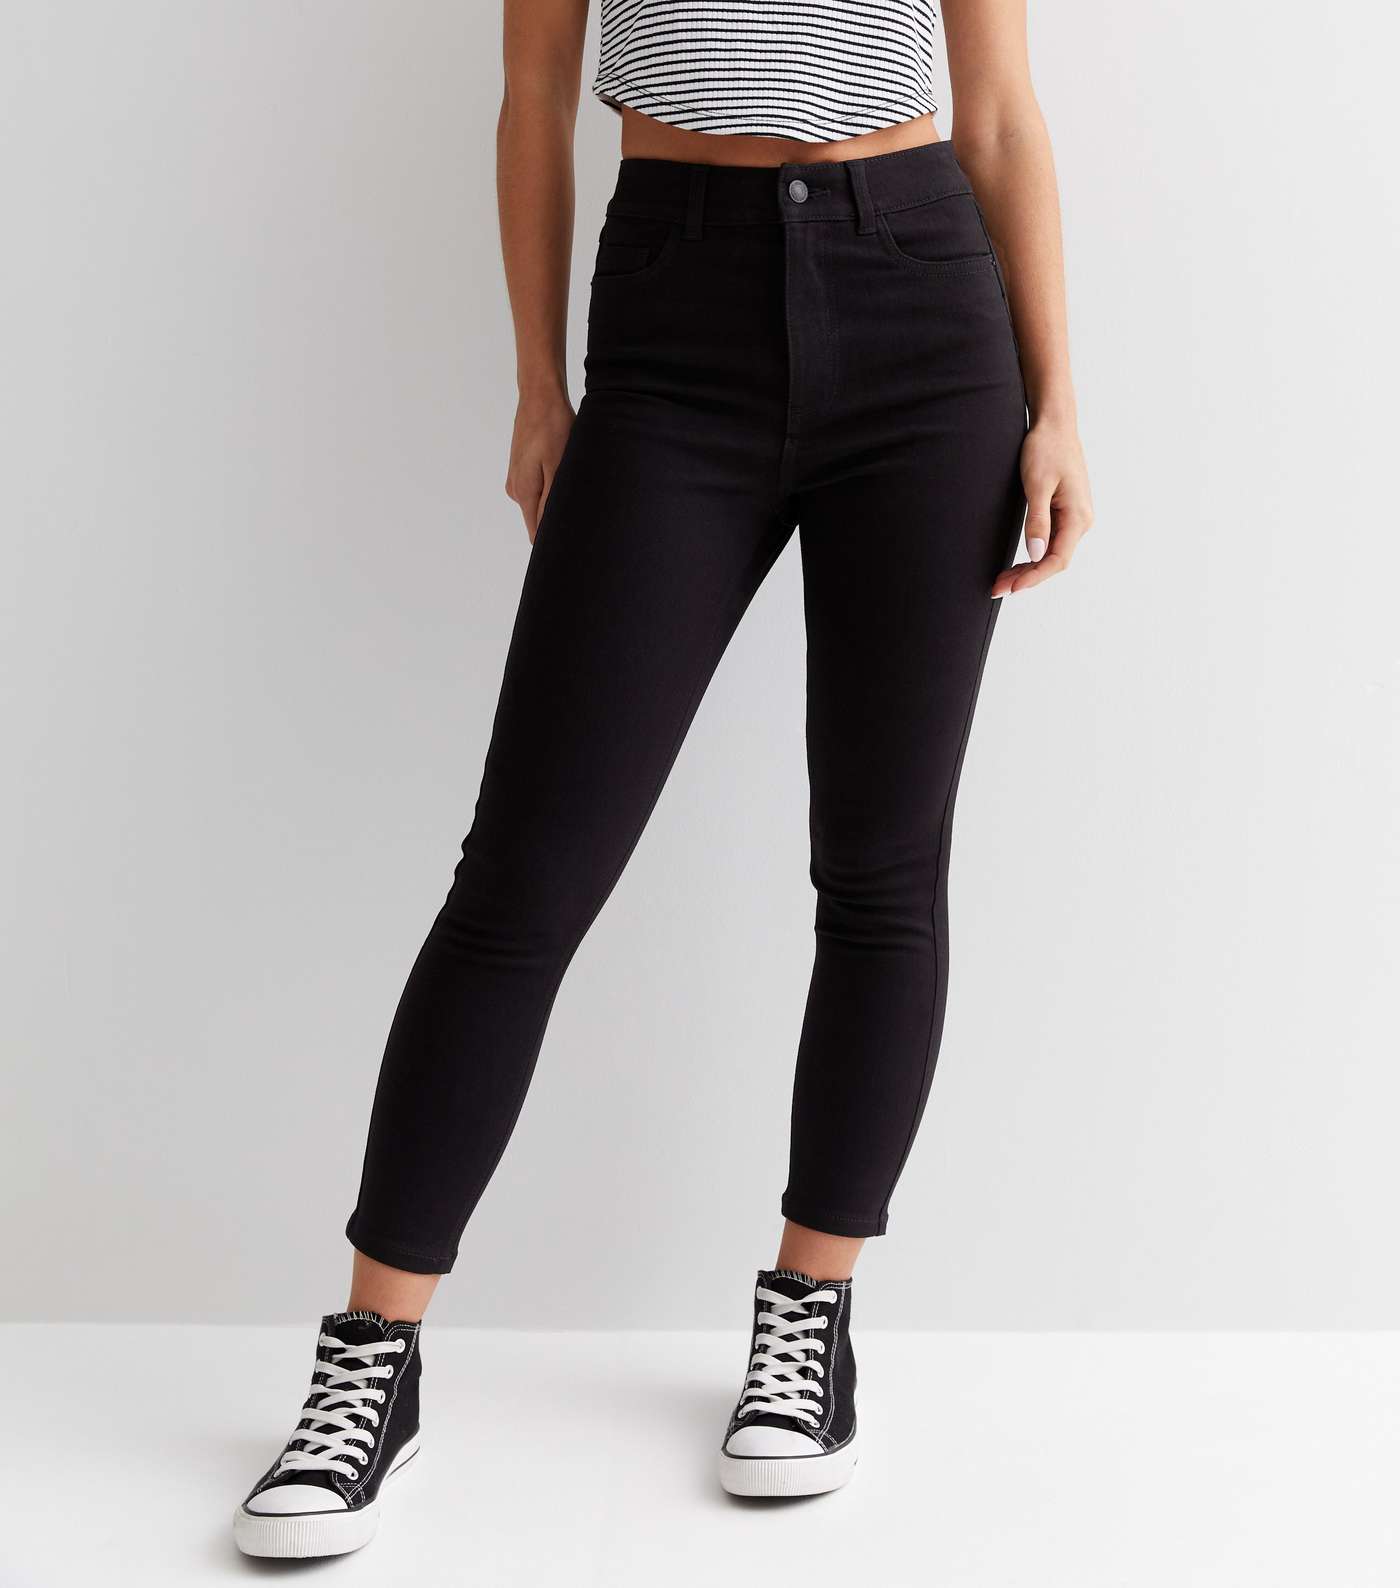 Petite Black Lift & Shape Short Leg Jenna Skinny Jeans Image 2